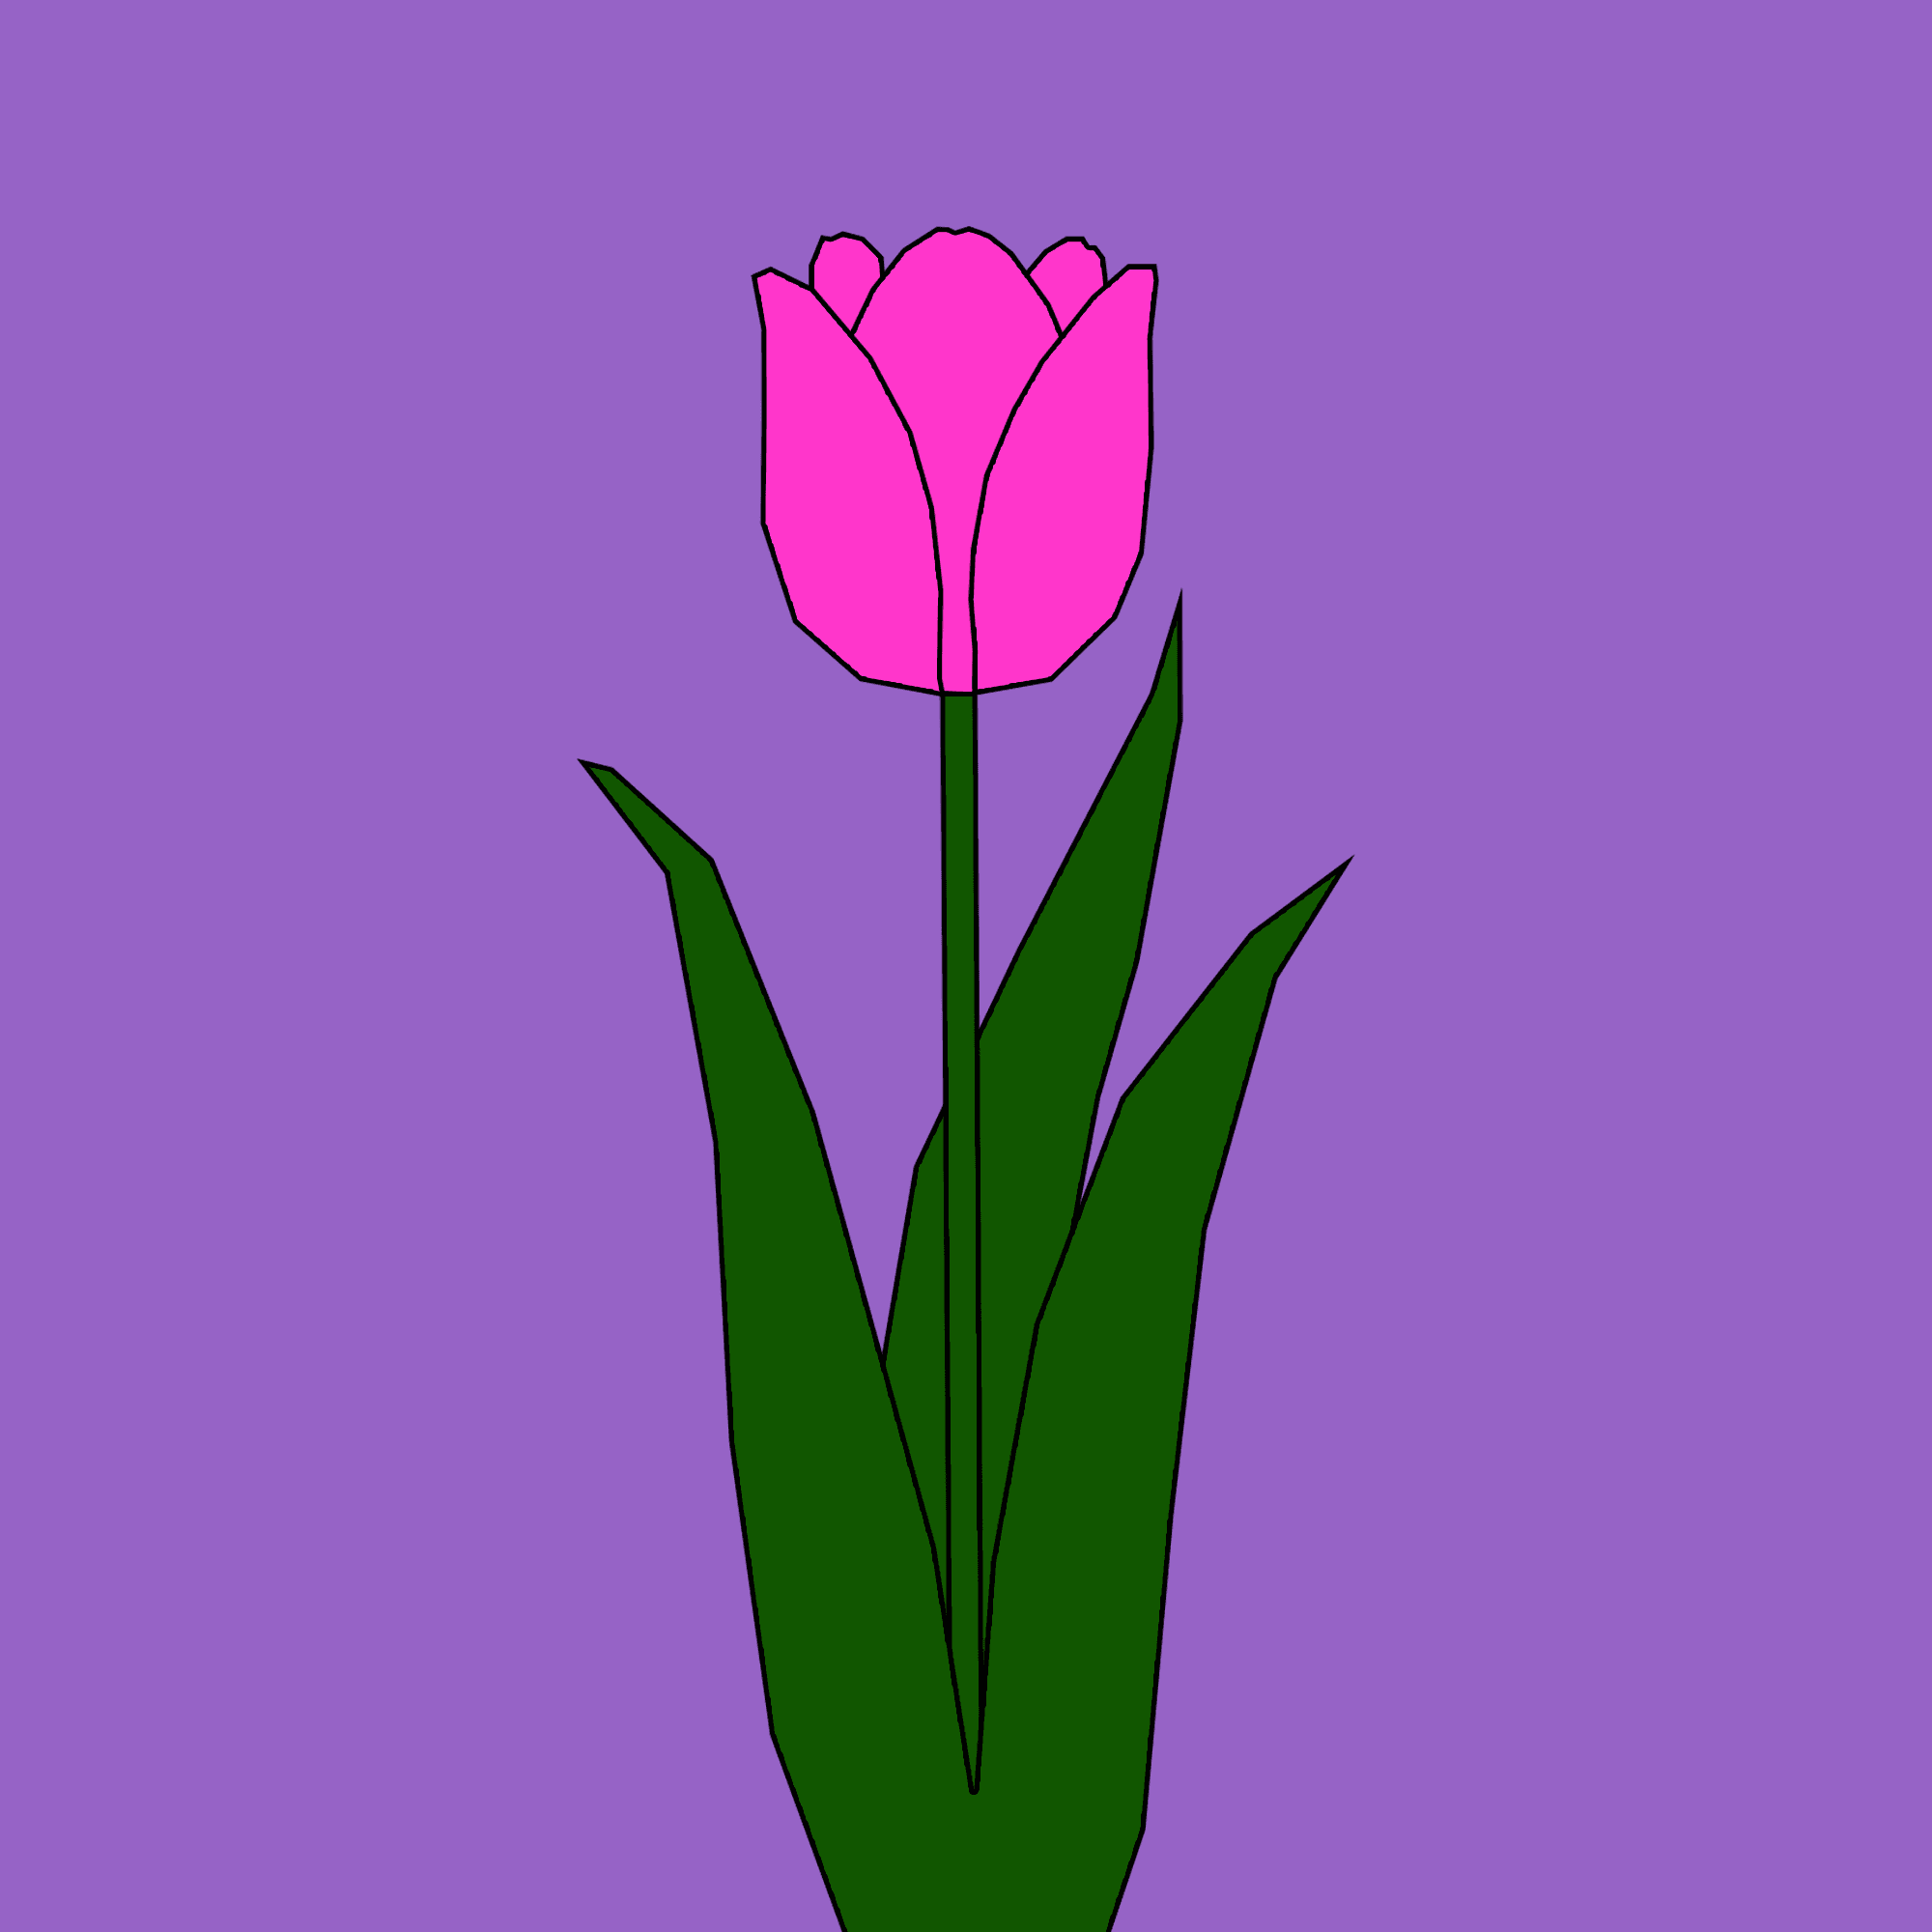 Vẽ hoa tulip là một hoạt động thư giãn và tạo ra những tác phẩm tuyệt đẹp. Hãy xem hình ảnh liên quan để cảm nhận nét đẹp và sự dịu dàng của hoa tulip mà bạn có thể vẽ được.